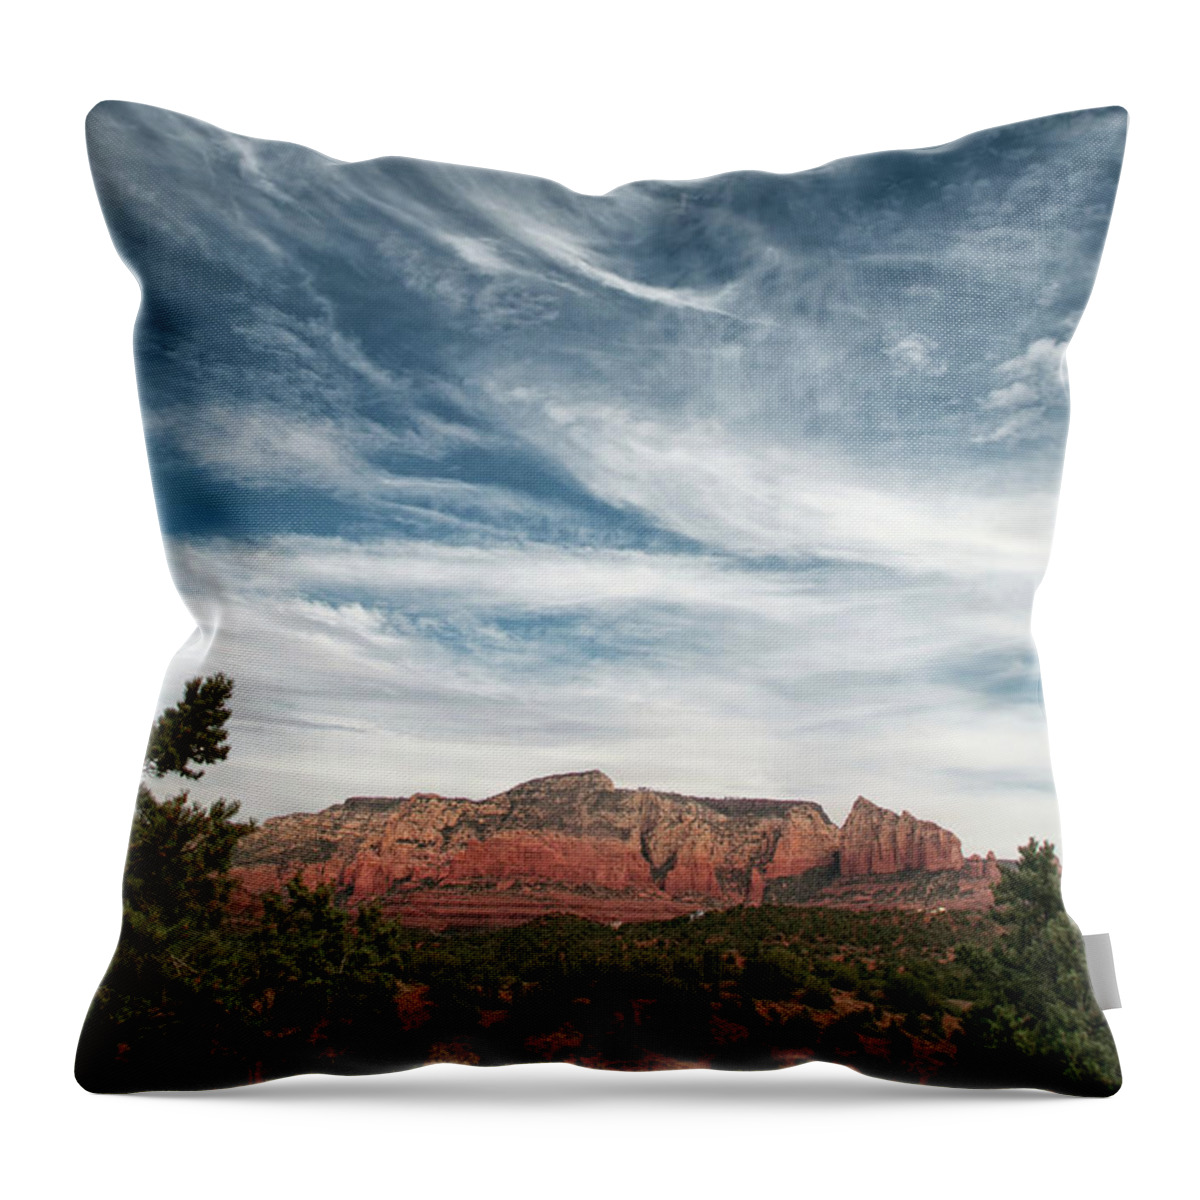 Sedona Throw Pillow featuring the photograph Sedona, Arizona #1 by Lisa Chorny